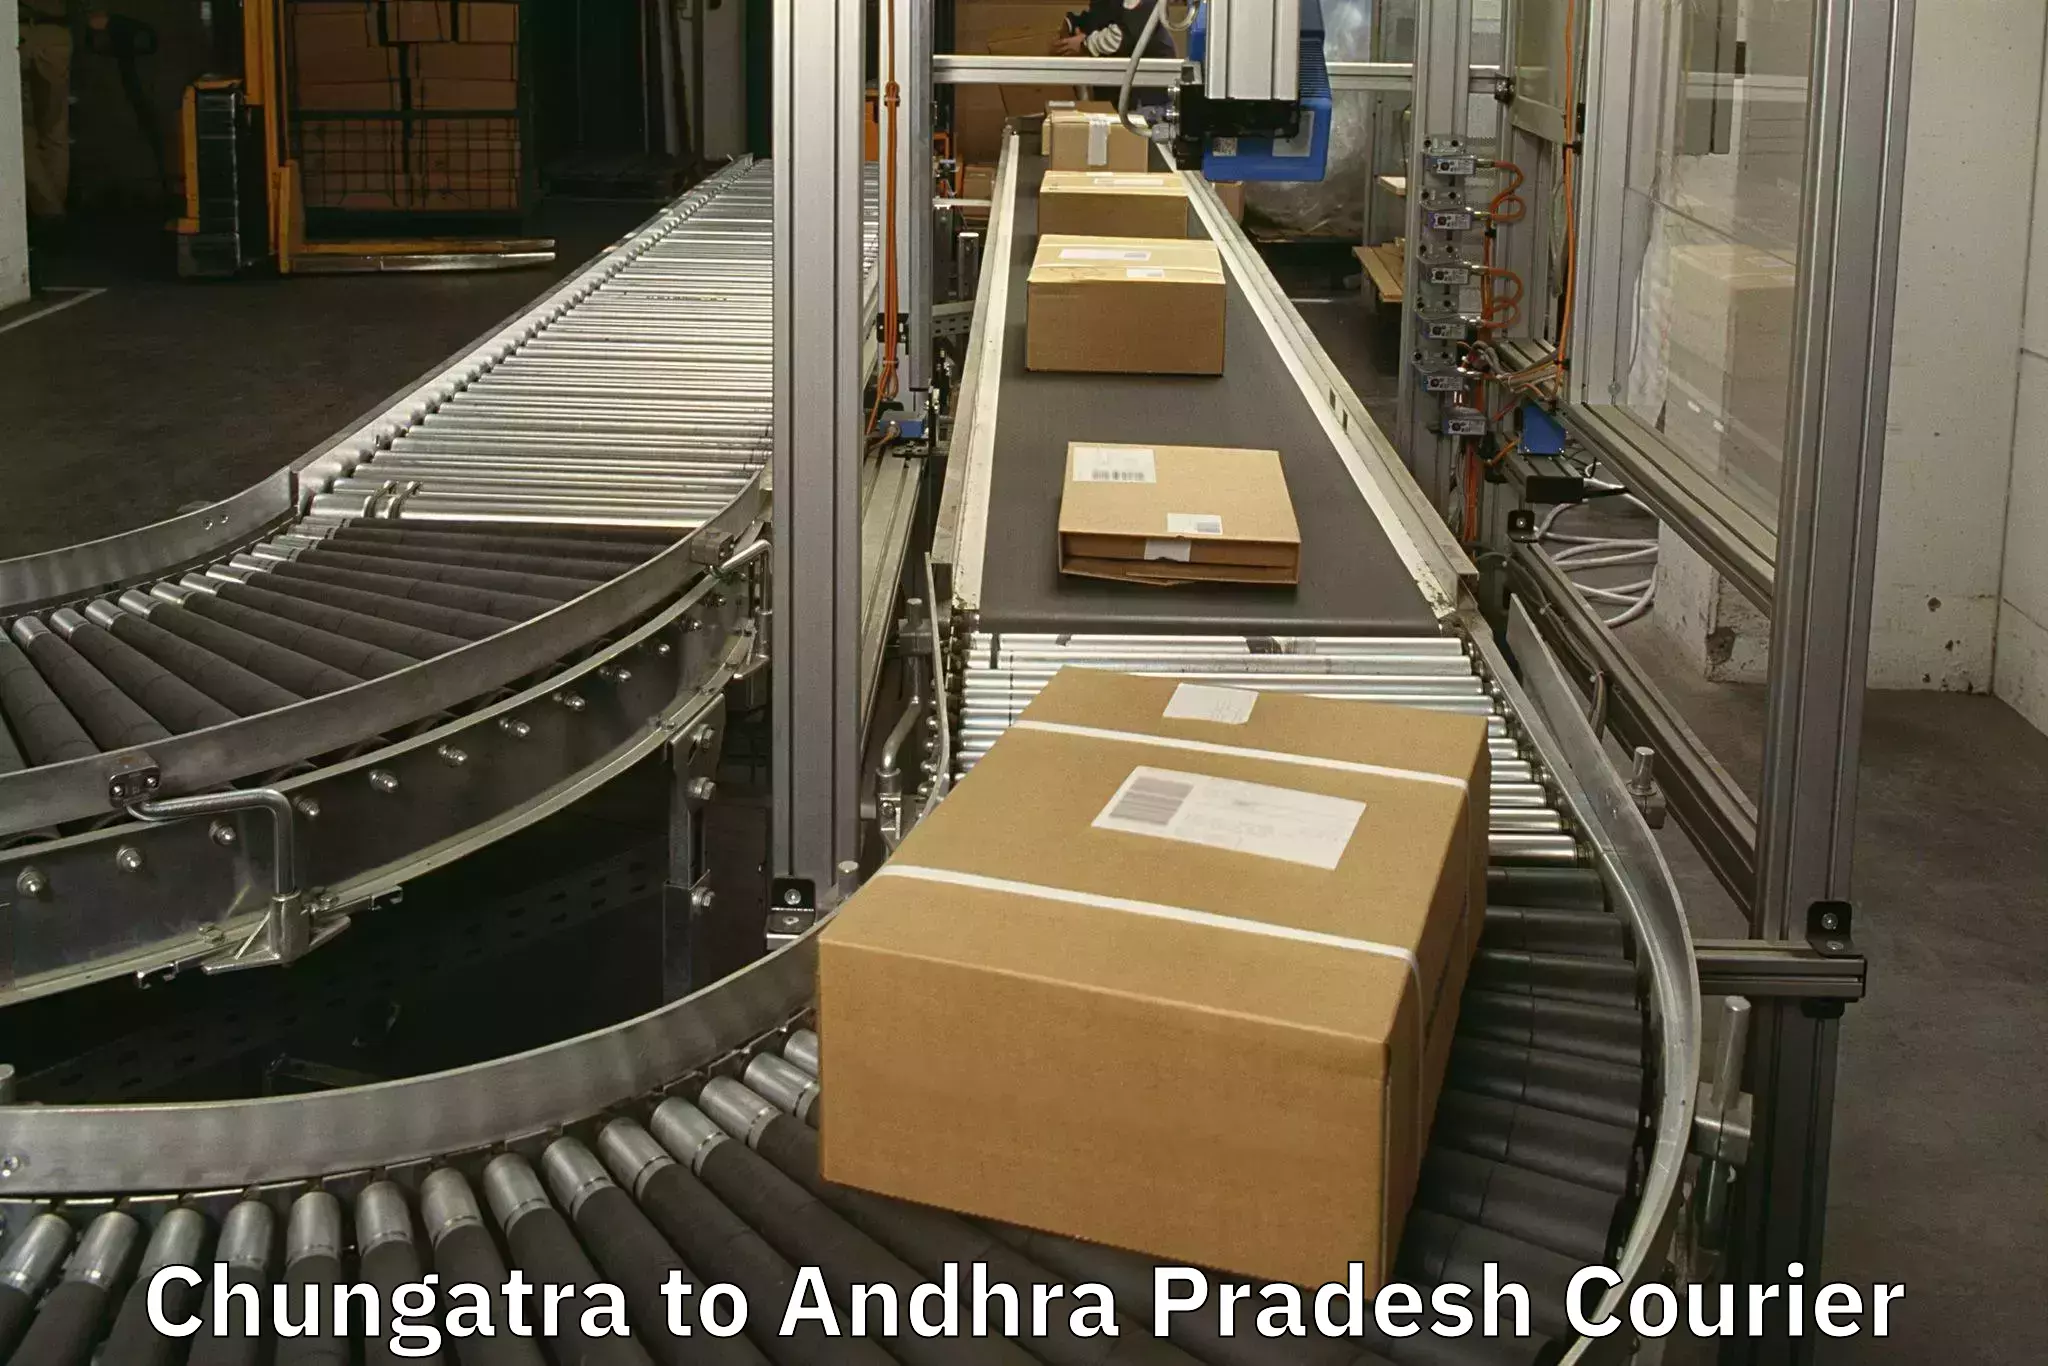 Electronic items luggage shipping Chungatra to Mantada